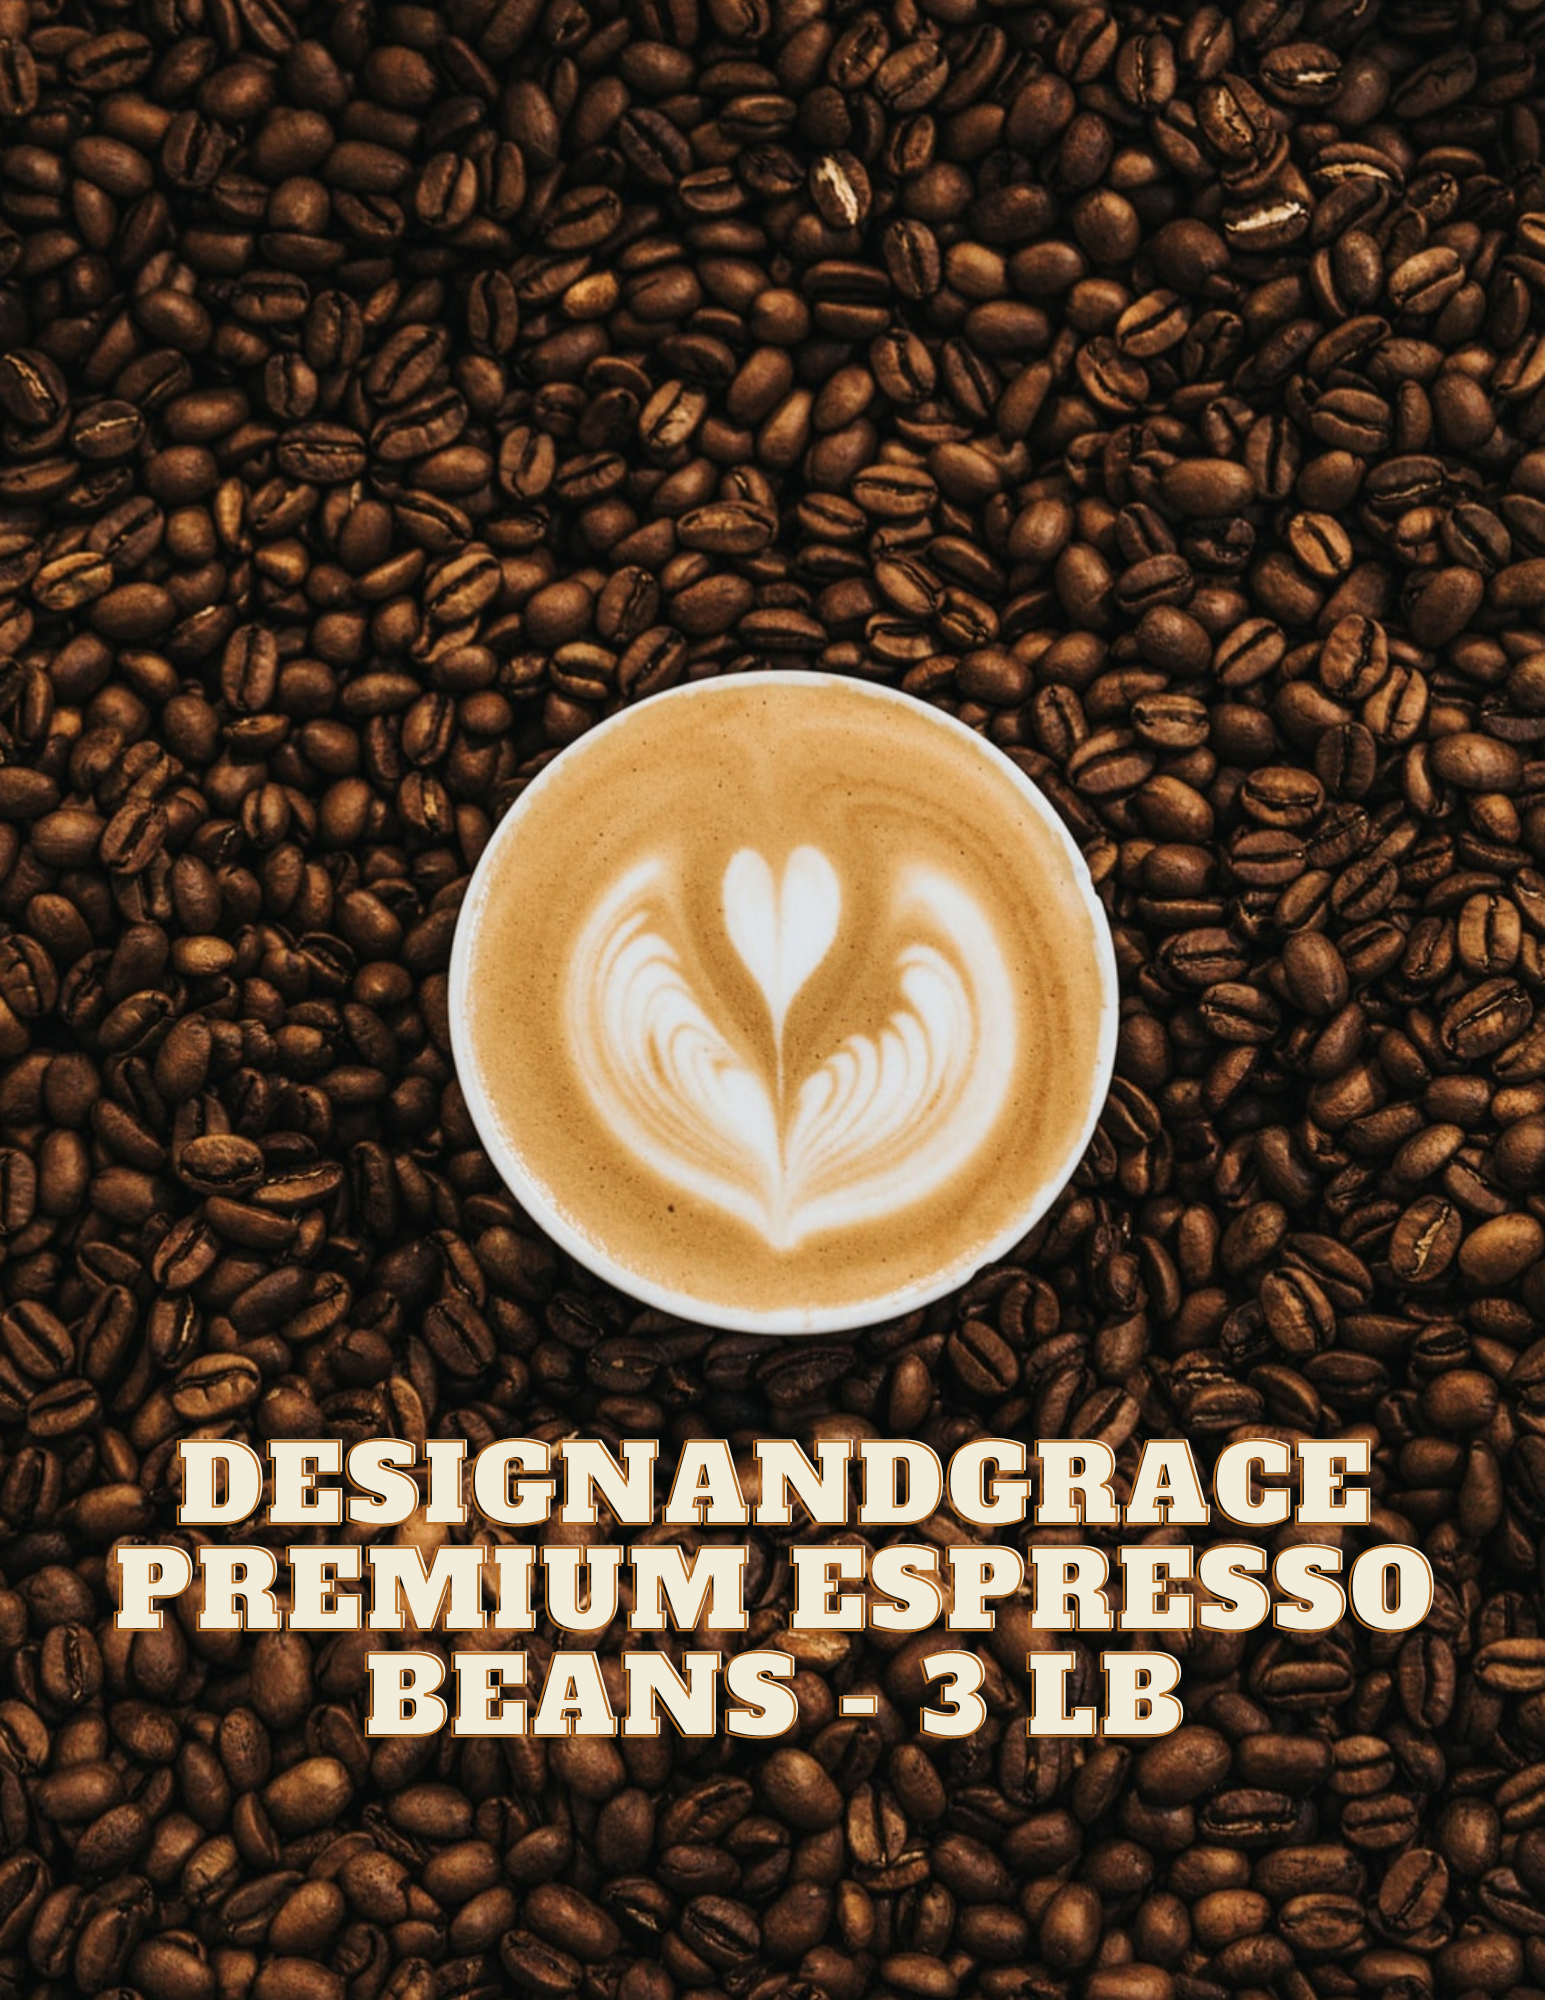 DesignandGrace Premium Espresso Coffee Beans - 3 lb